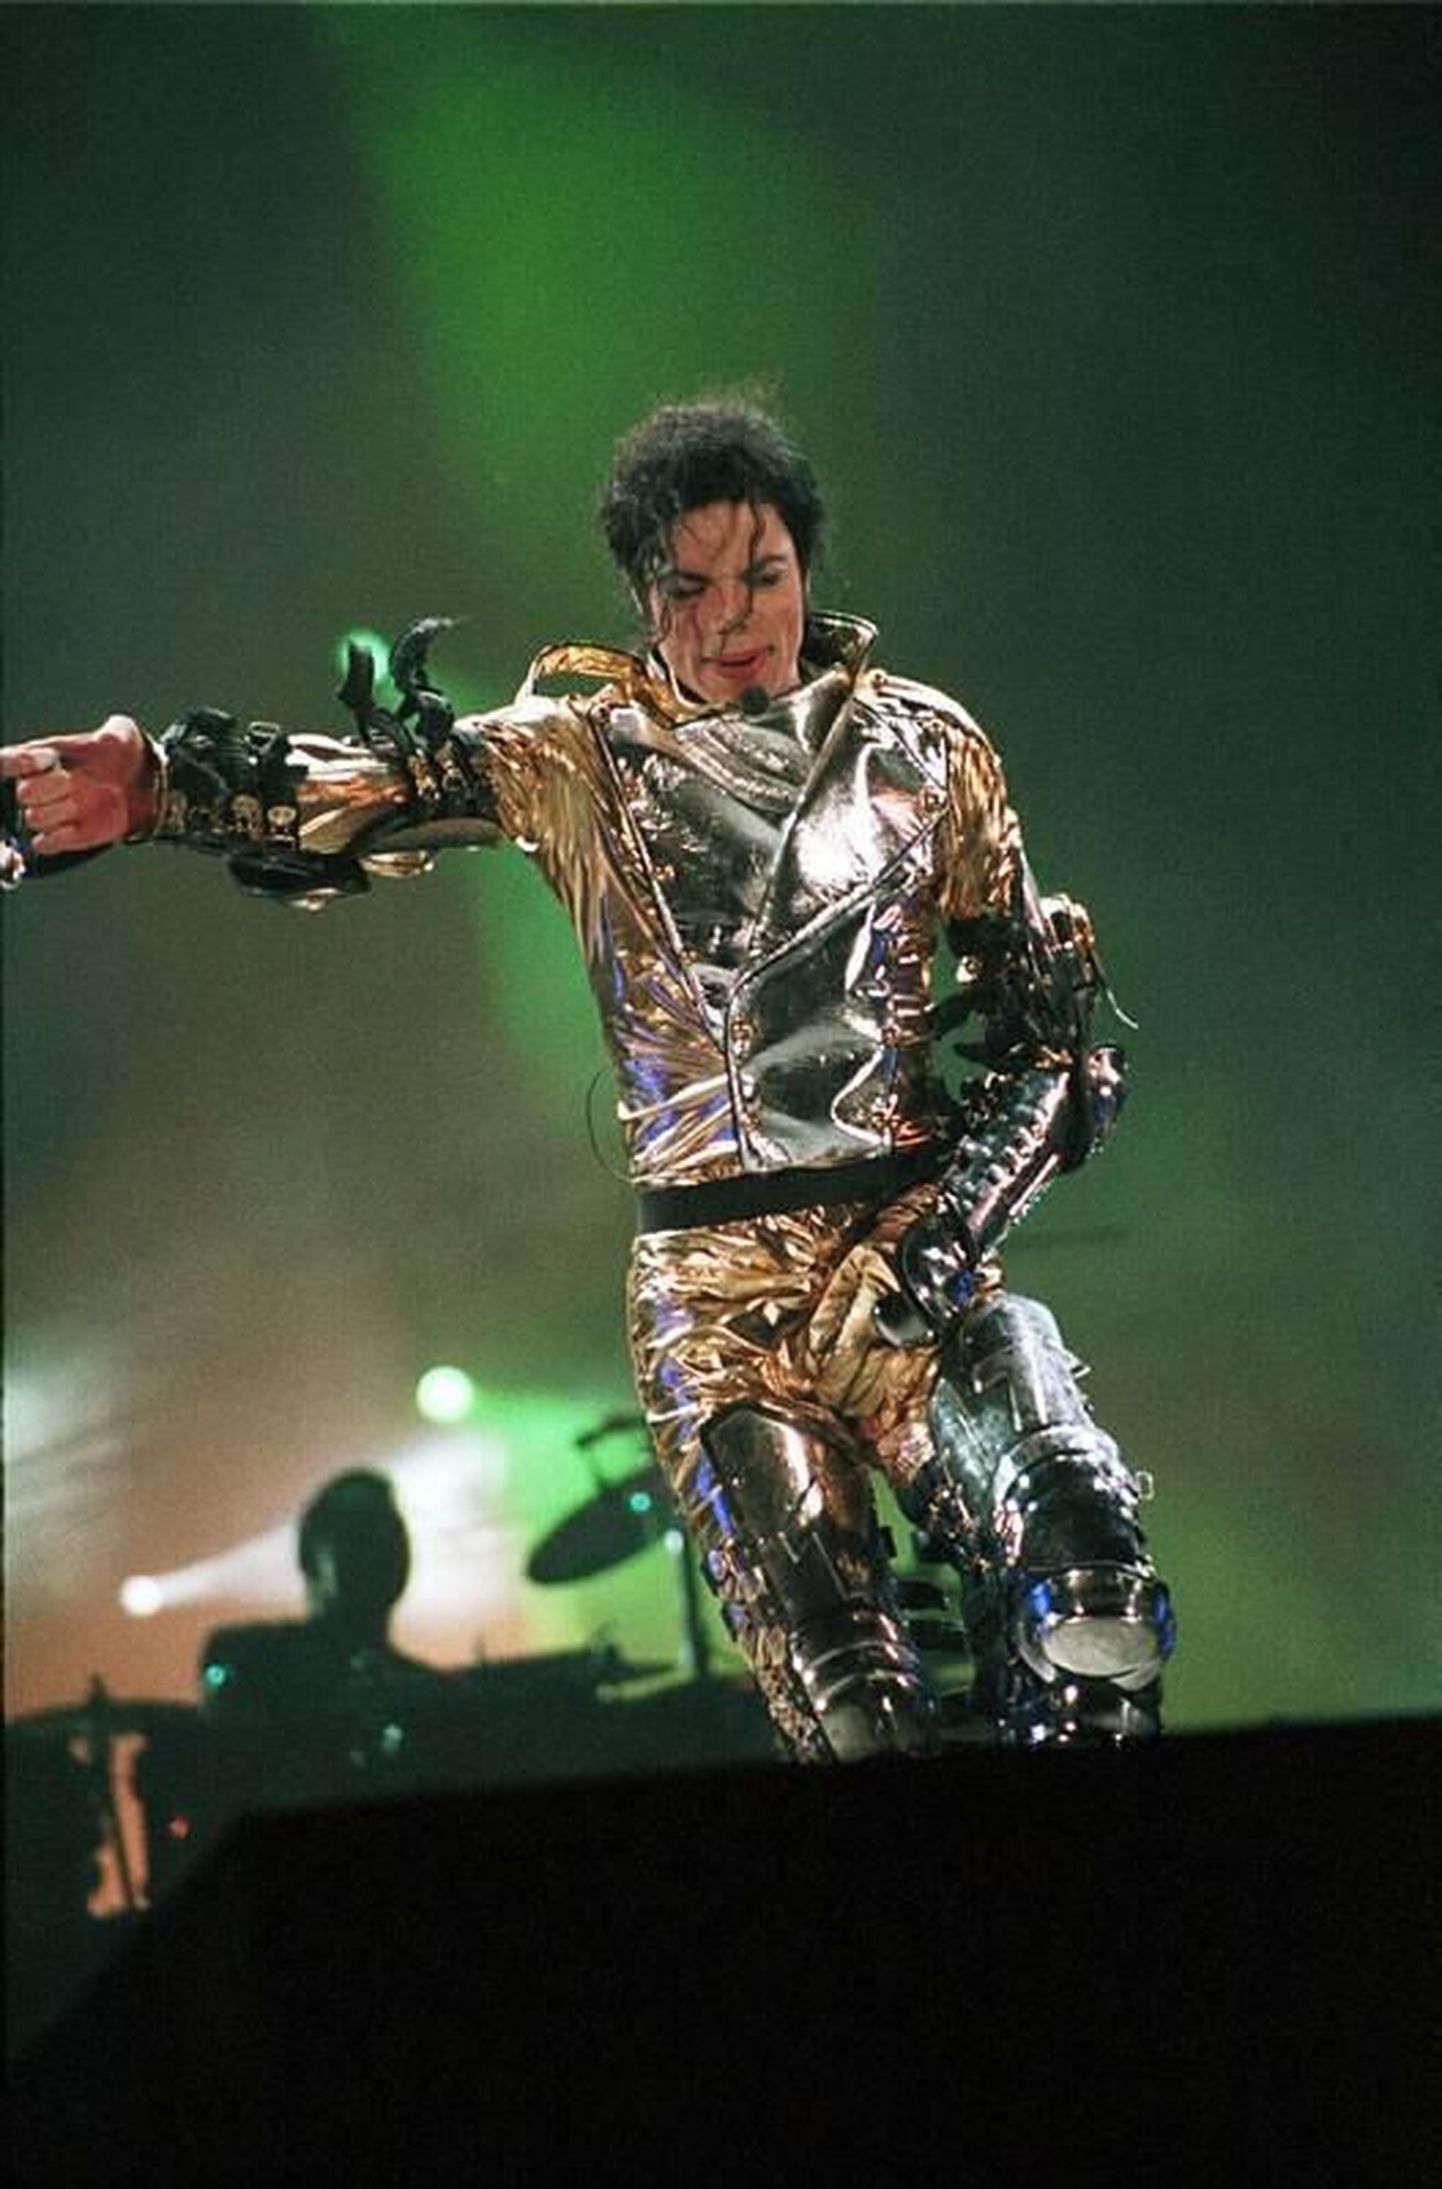 Michael Jacksoni kontsert Tallinna Lauluväljakul 22. augustil 1997.